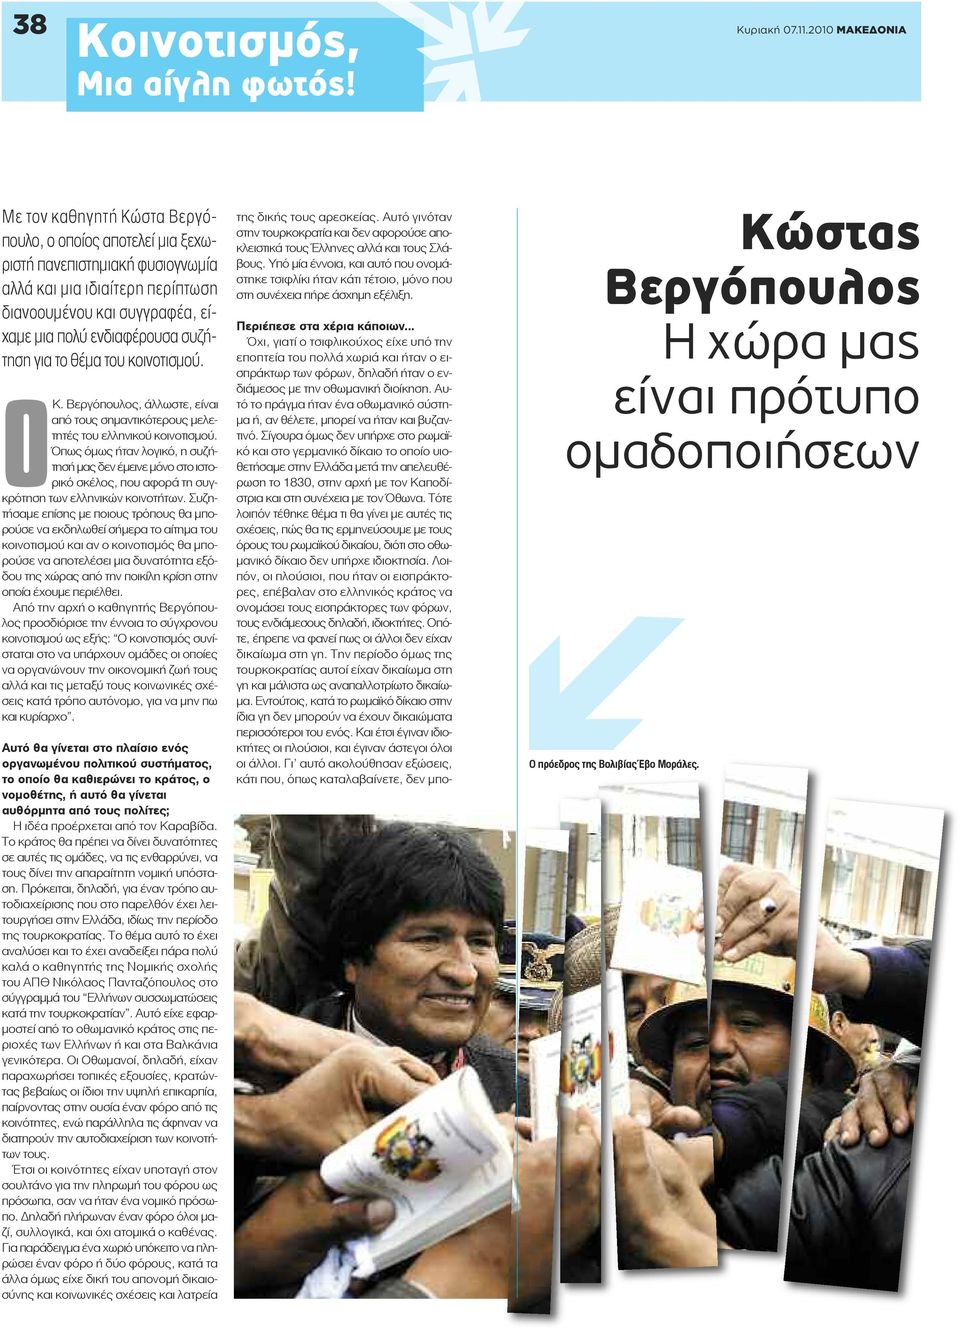 συζήτηση για το θέμα του κοινοτισμού. ΟΚ. Βεργόπουλος, άλλωστε, είναι από τους σημαντικότερους μελετητές του ελληνικού κοινοτισμού.